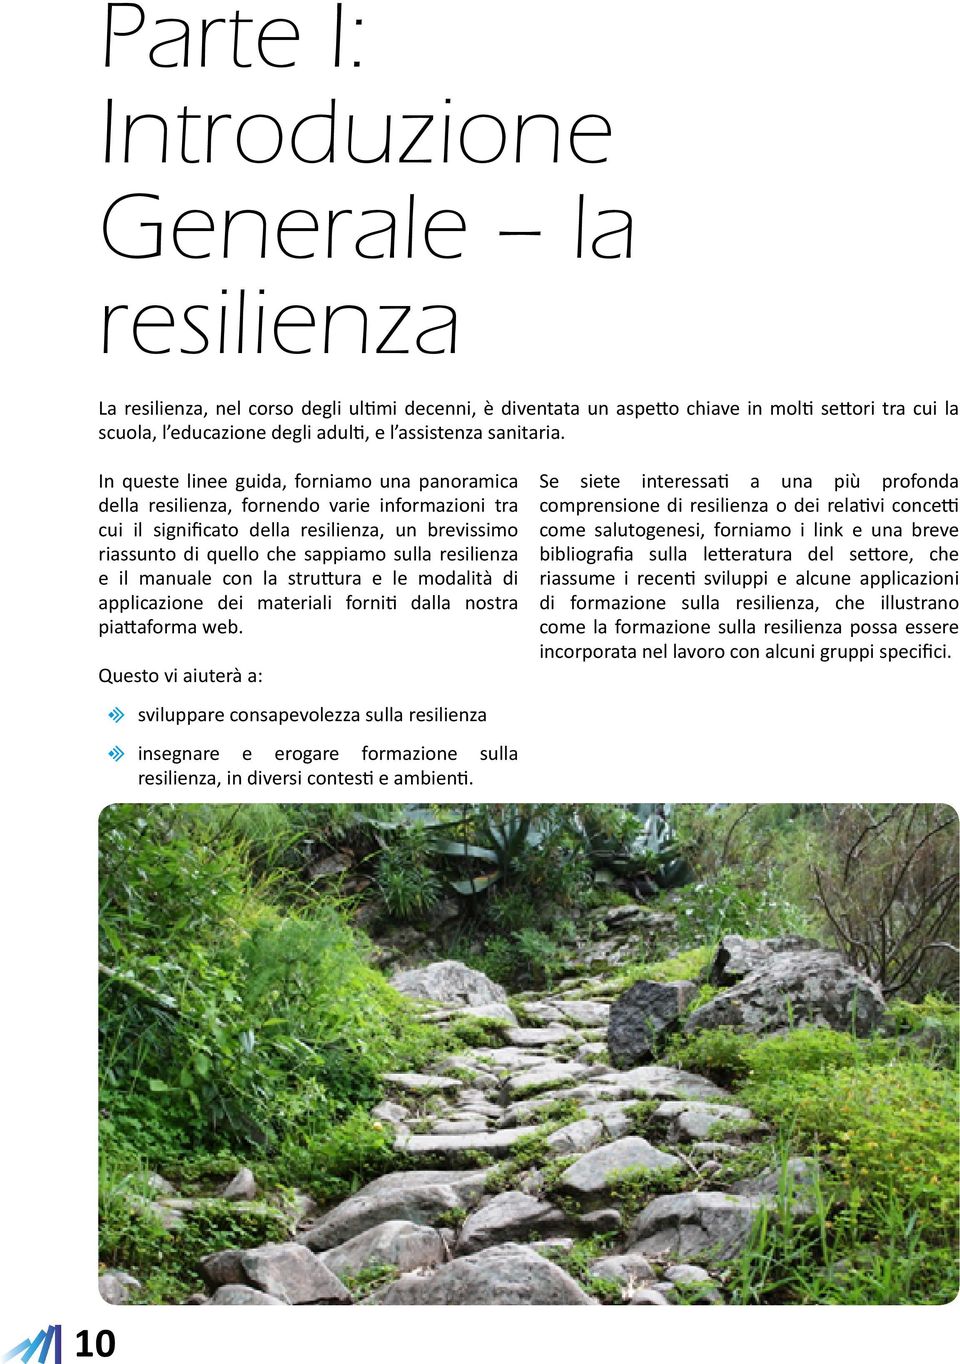 In queste linee guida, forniamo una panoramica dea resilienza, fornendo varie informazioni tra cui il significato dea resilienza, un brevissimo riassunto di queo che sappiamo sua resilienza e il